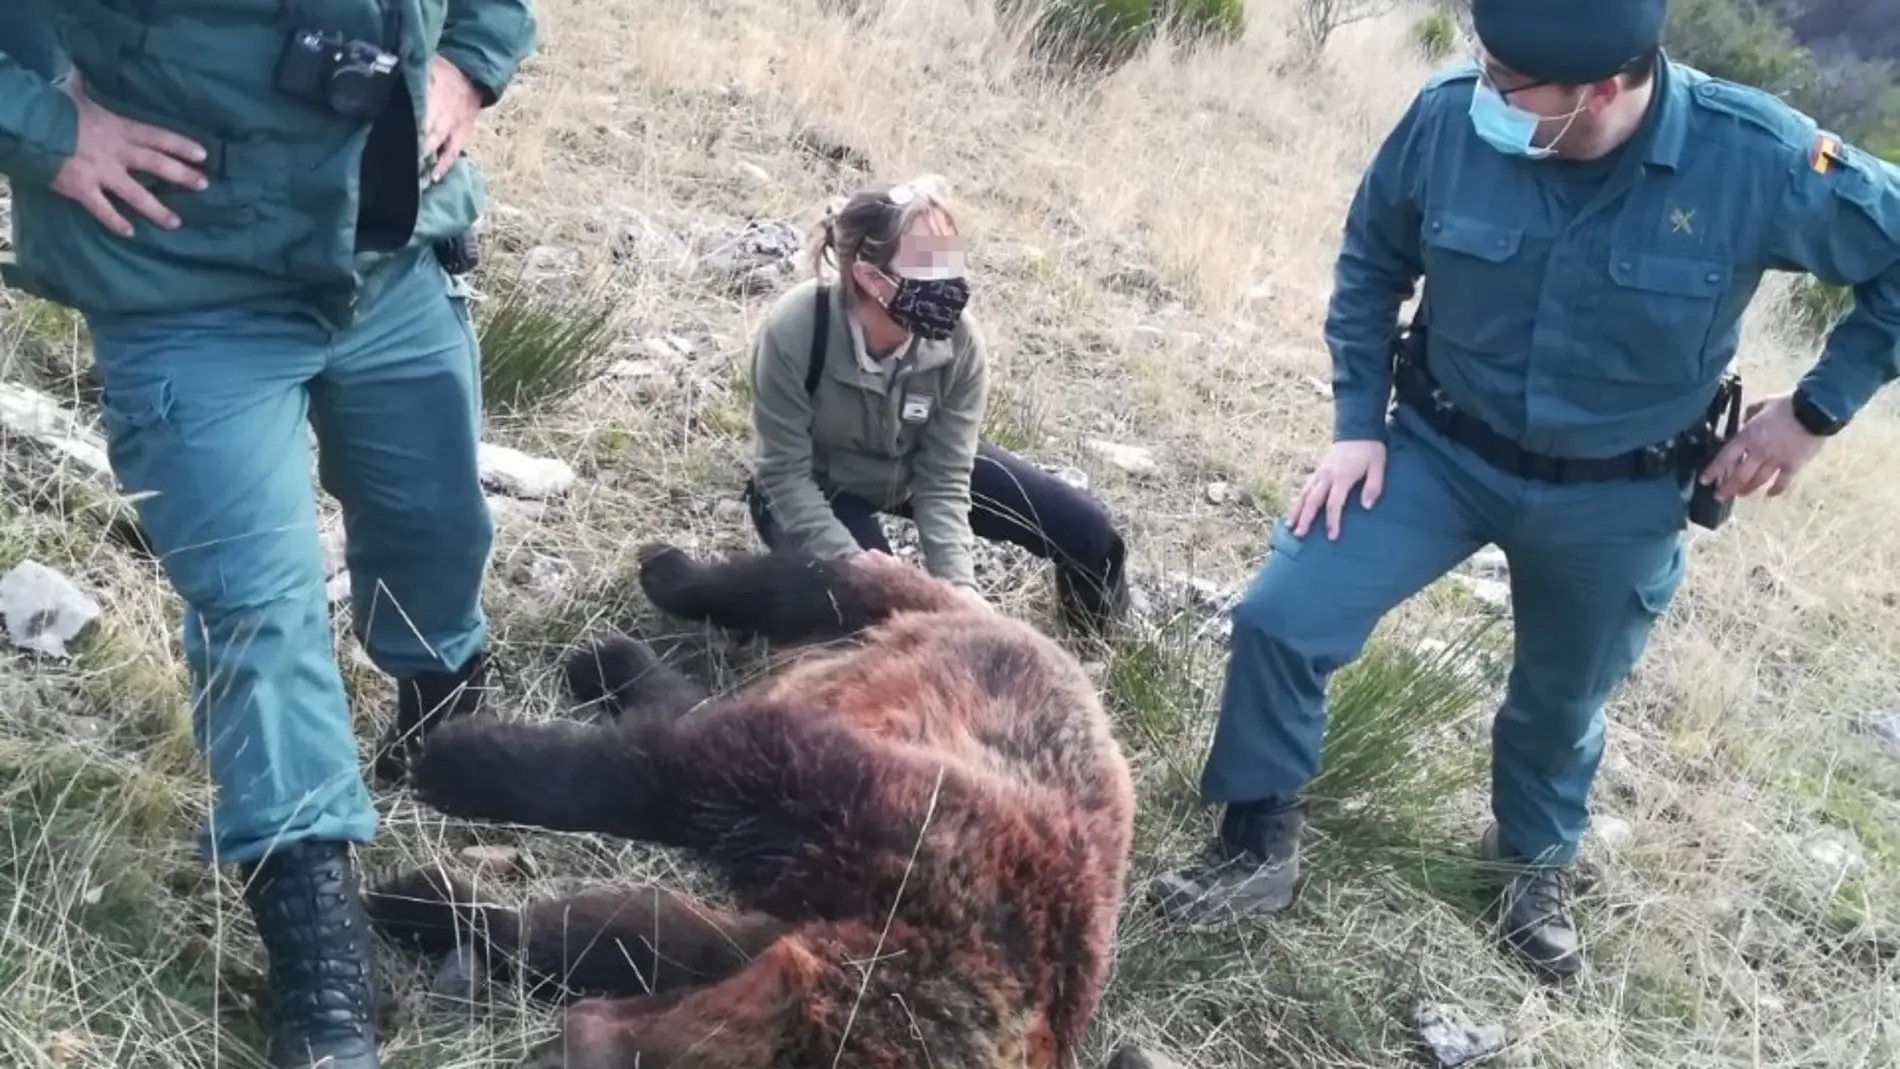 La Guardia Civil investiga a una persona por un delito de caza que causó la muerte de un ejemplar hembra de oso pardo